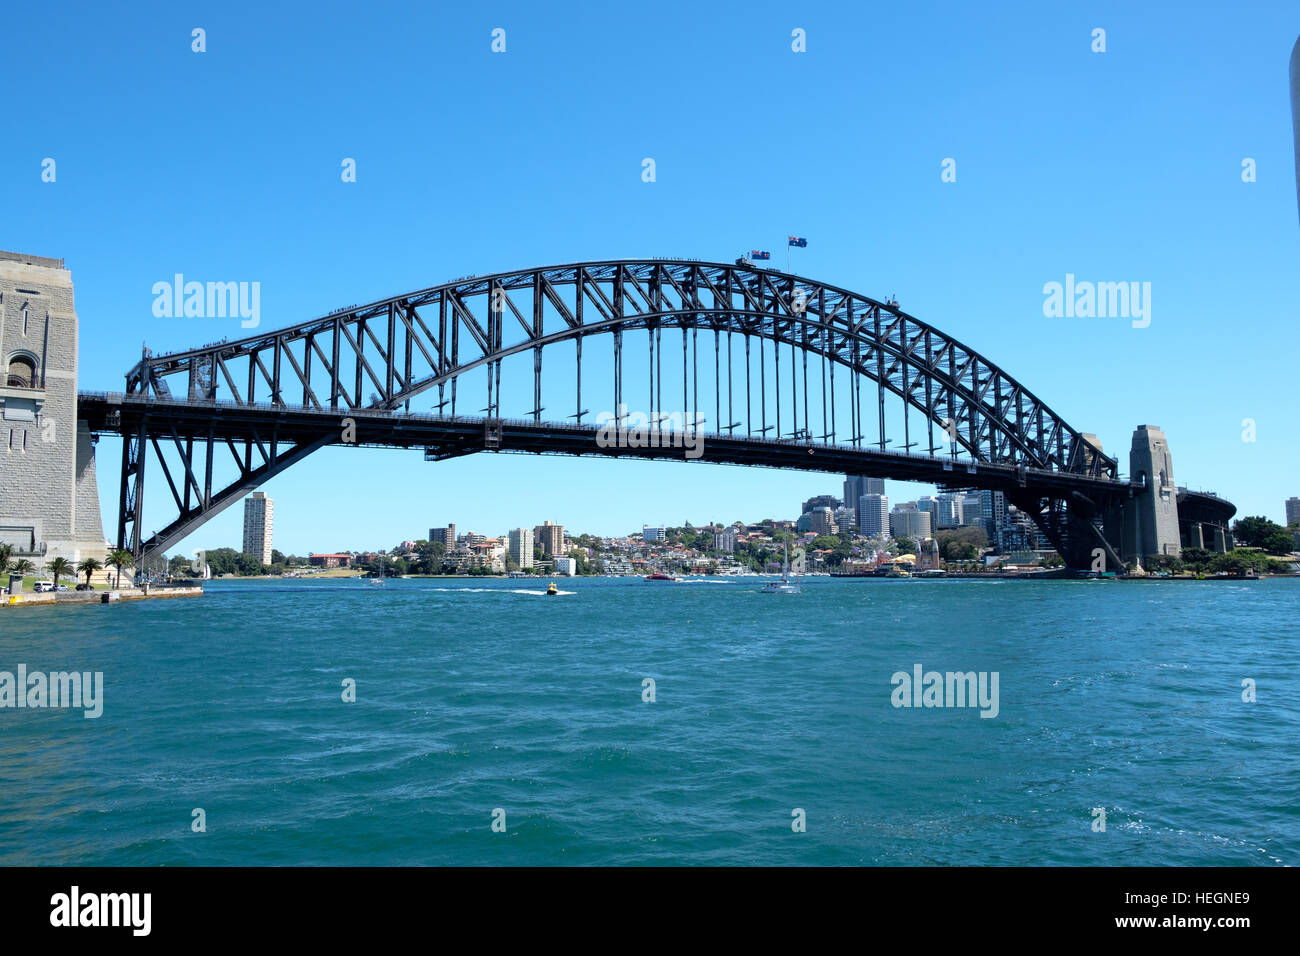 Sydney harbour bridge against a blue sky Stock Photo